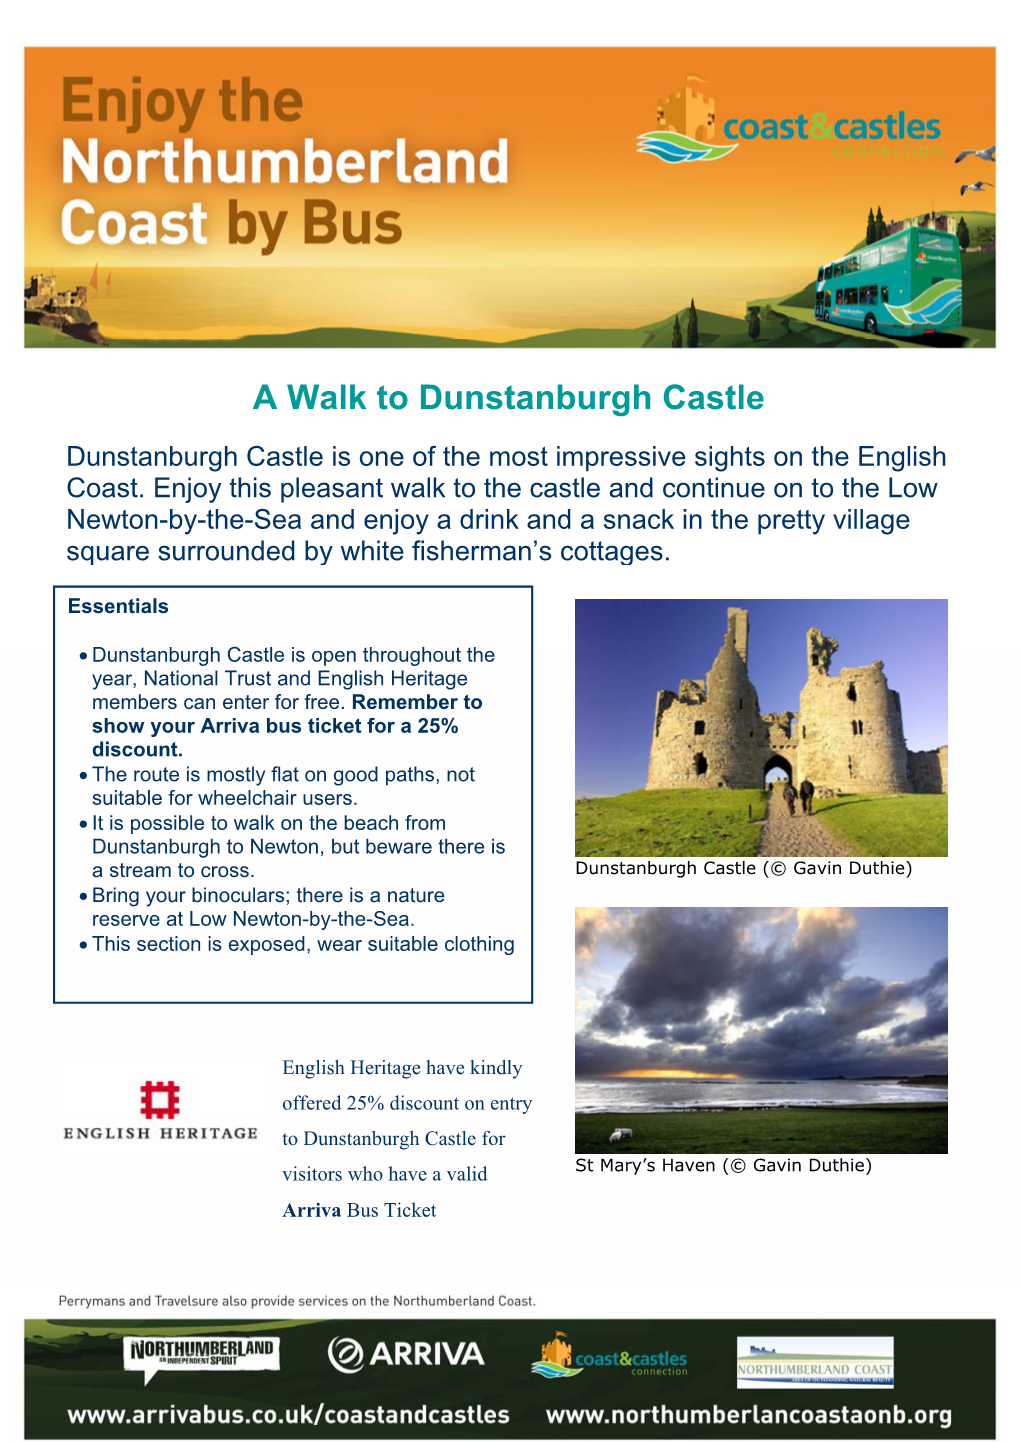 A Walk to Dunstanburgh Castle